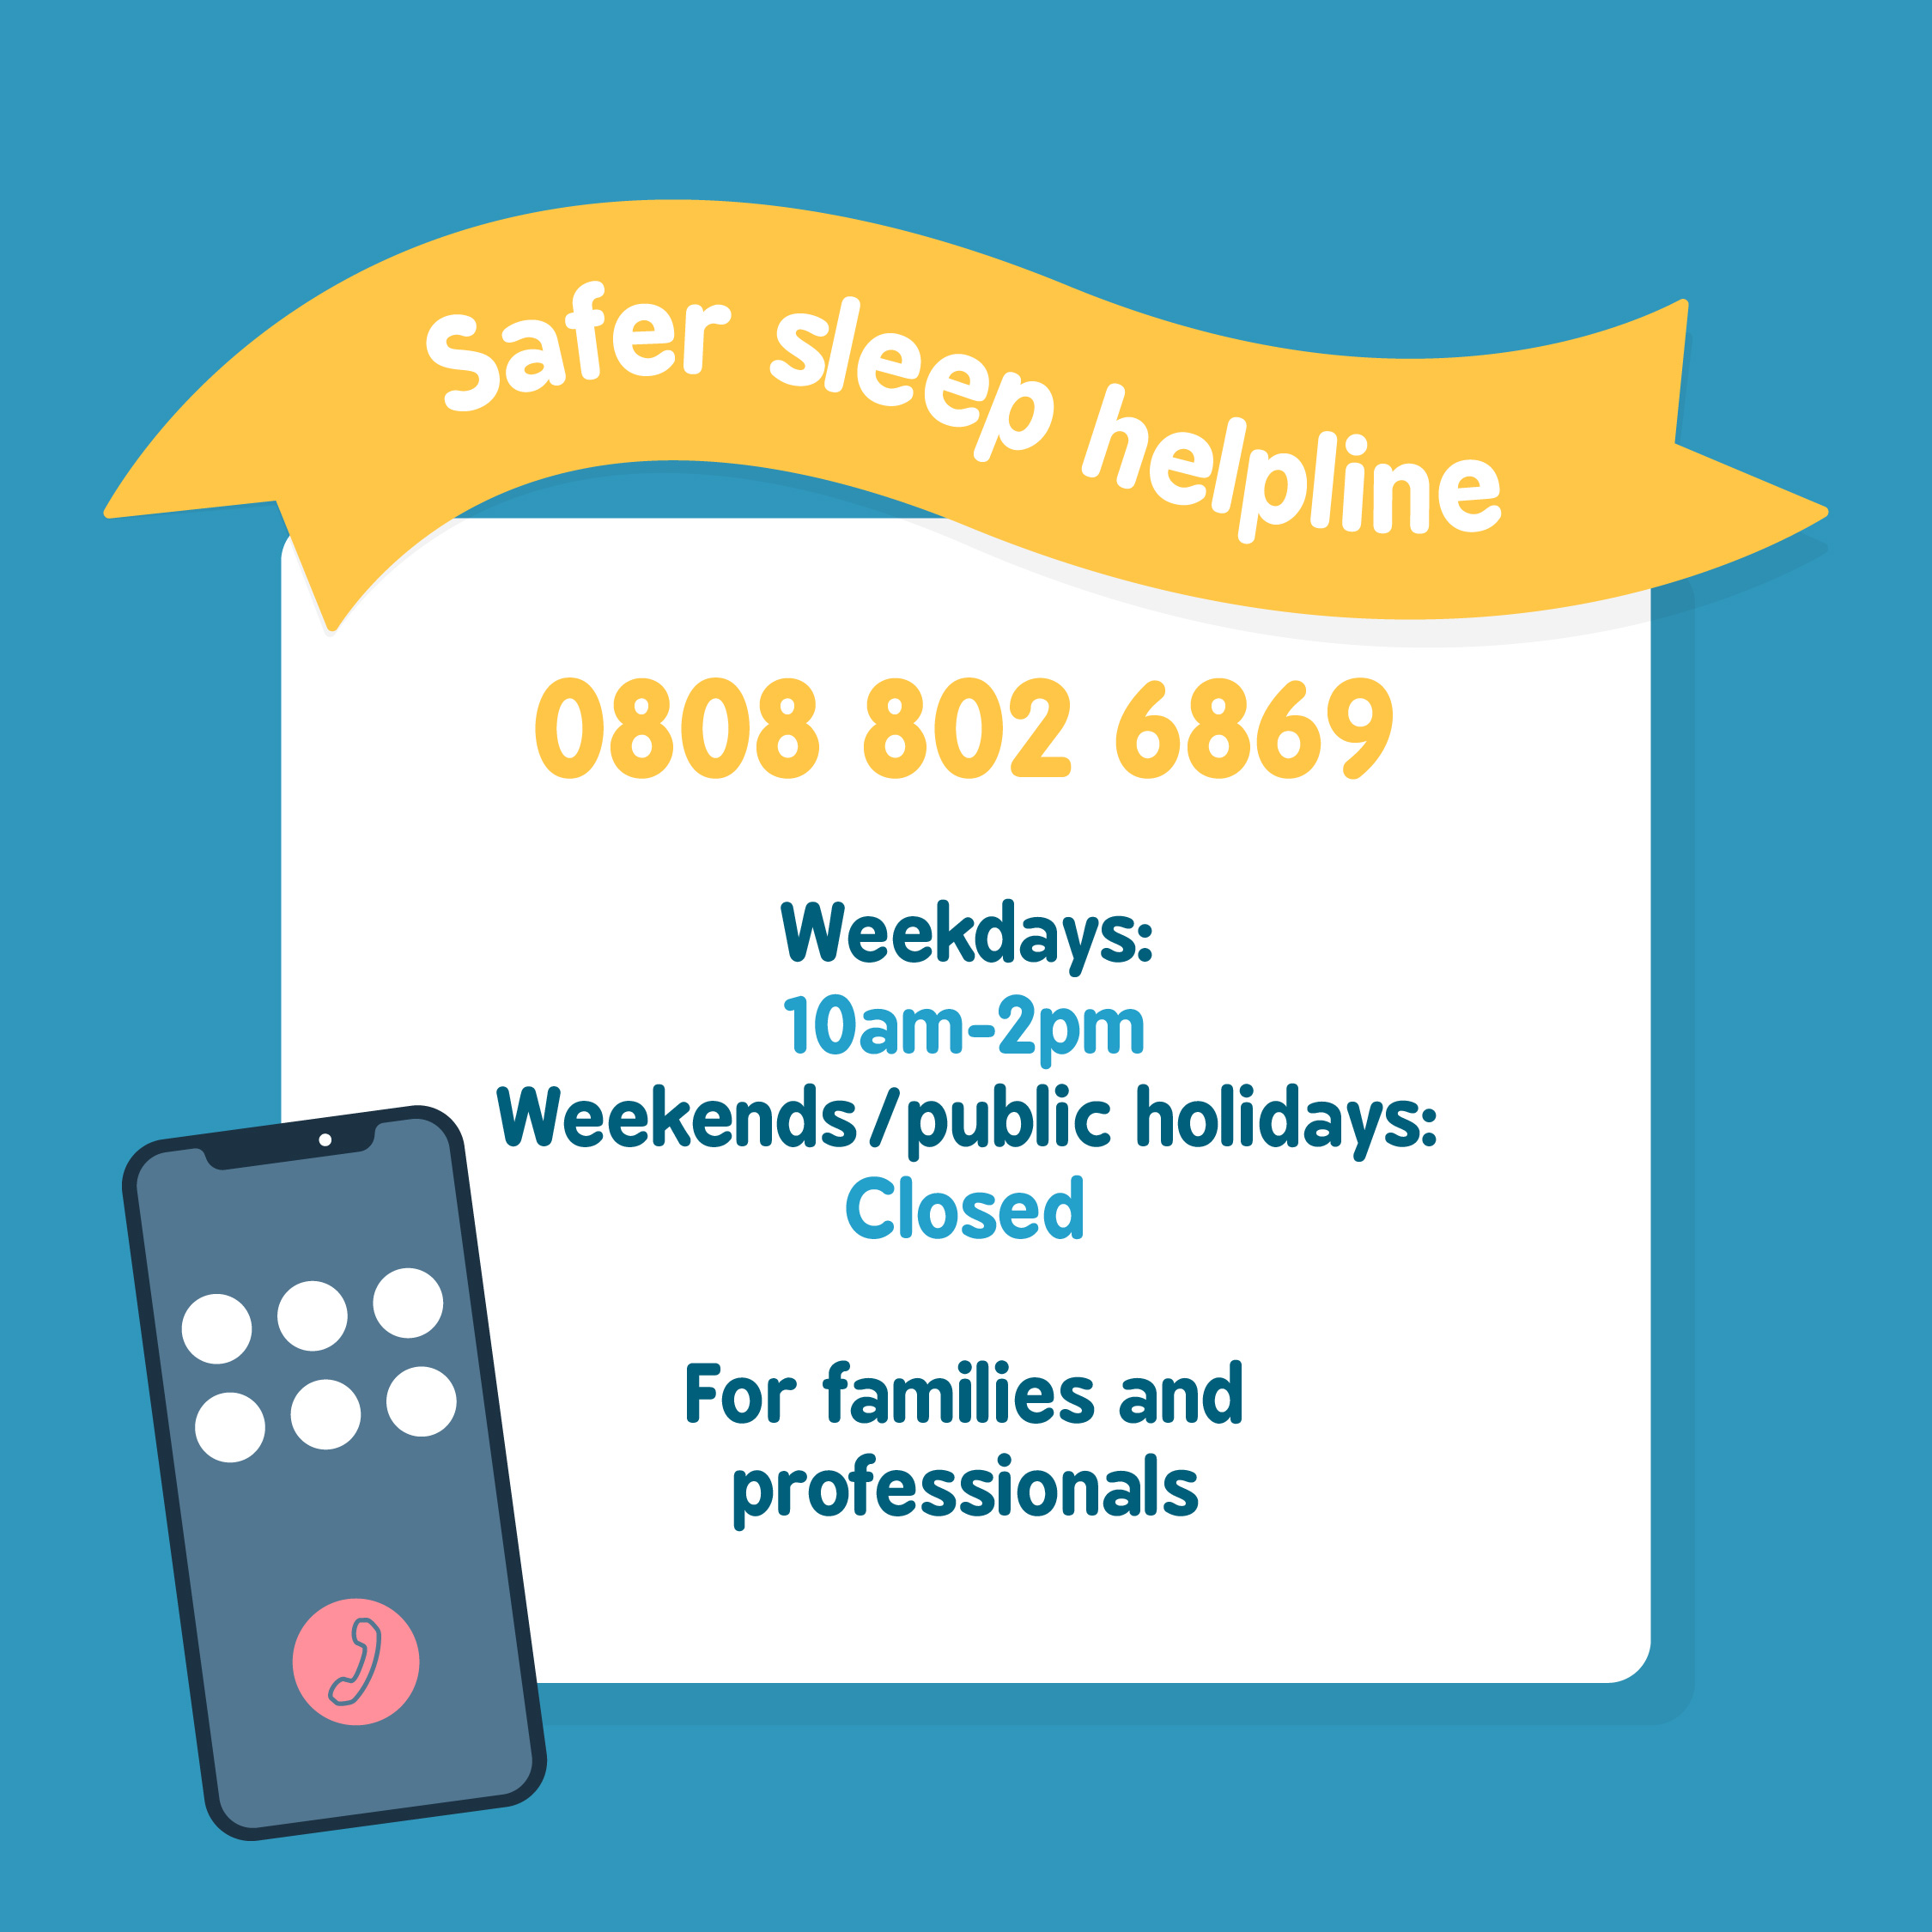 Safer sleep for babies resources - safer sleep information phoneline